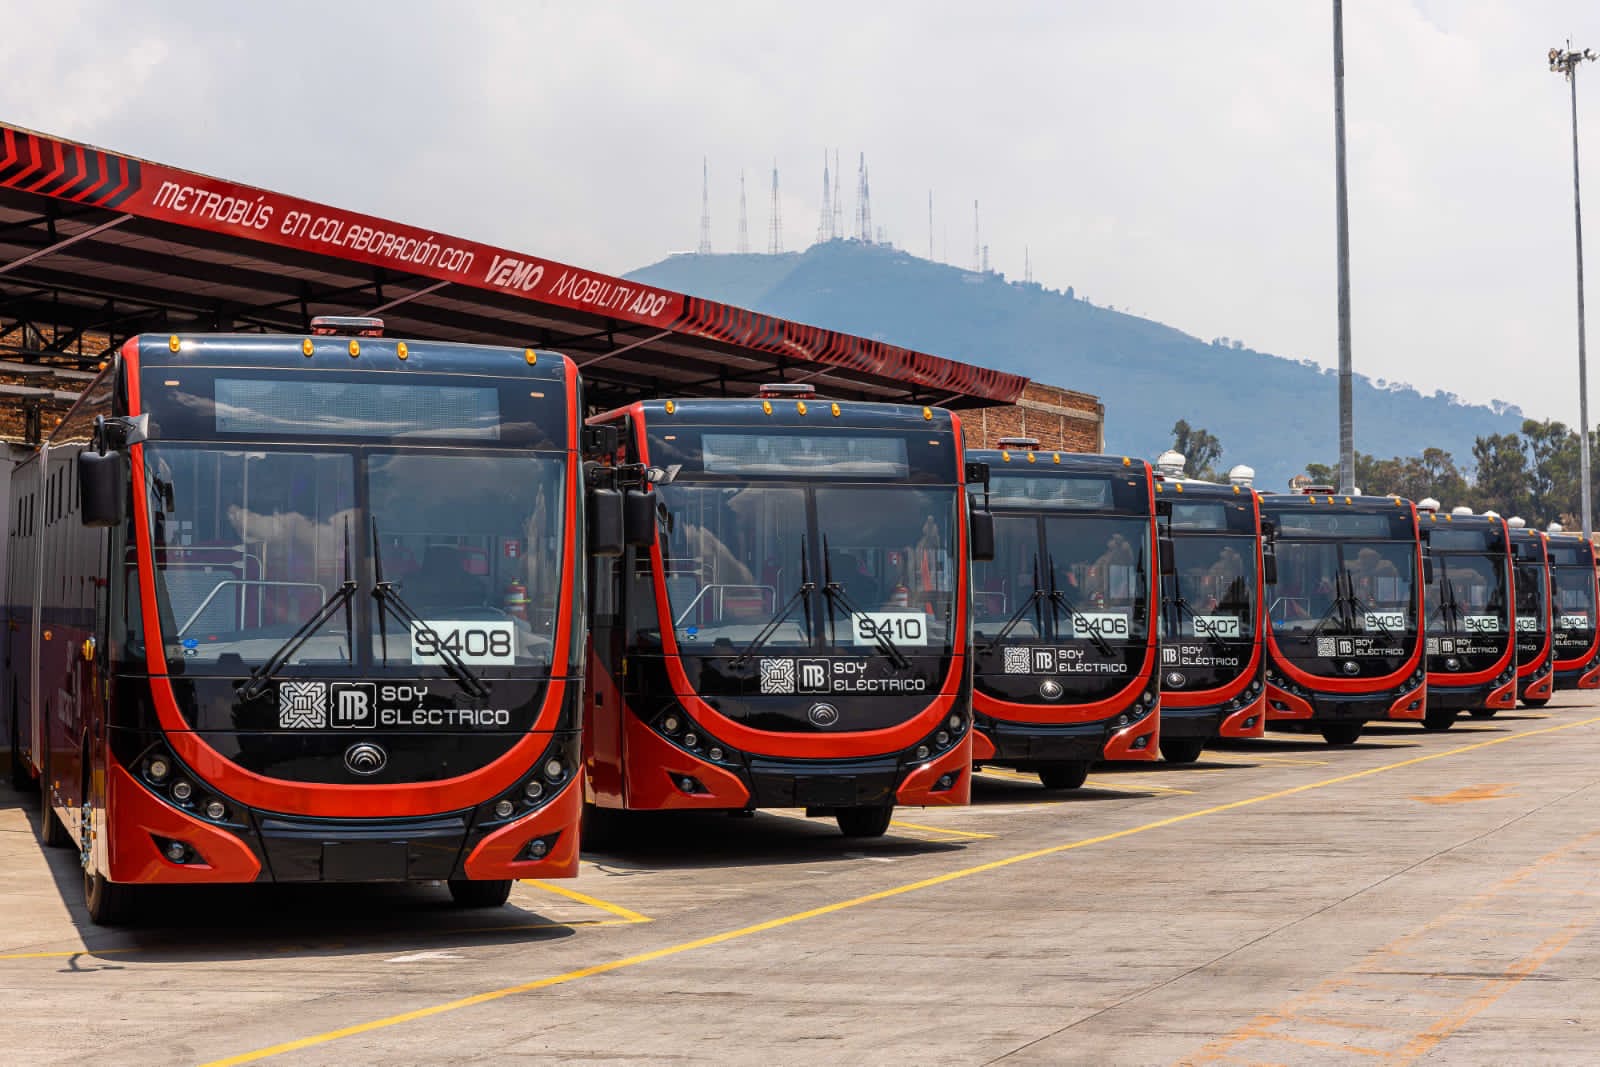 MIVSA, filial de MOBILITY ADO, y Santander anuncian financiamiento para la compra de 50 autobuses eléctricos para el Metrobús